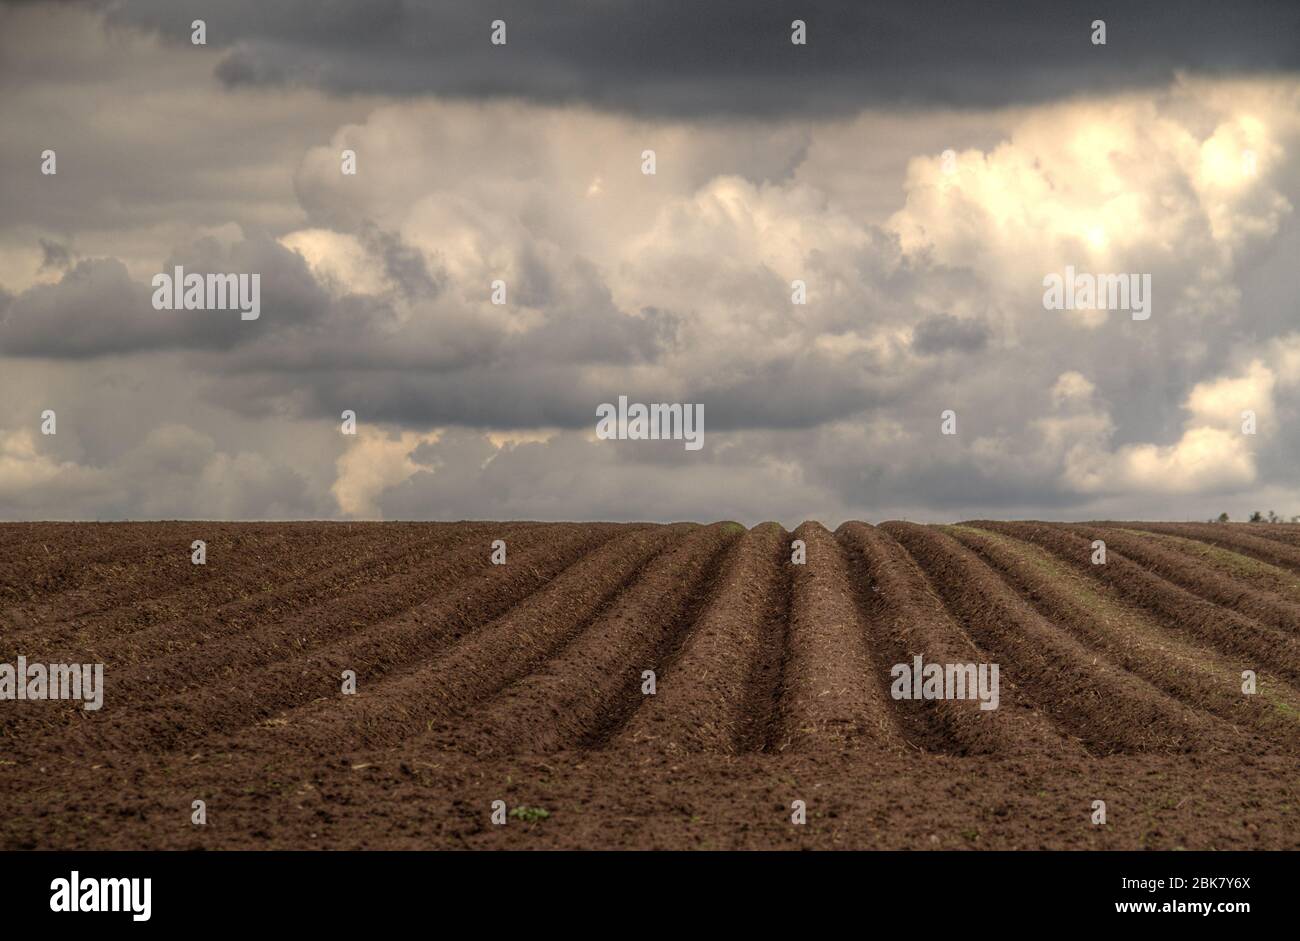 Muster von Graten und Furchen in einem humosen Sandfeld in einem hügeligen Gelände, vorbereitet für den Anbau von Kartoffeln Stockfoto